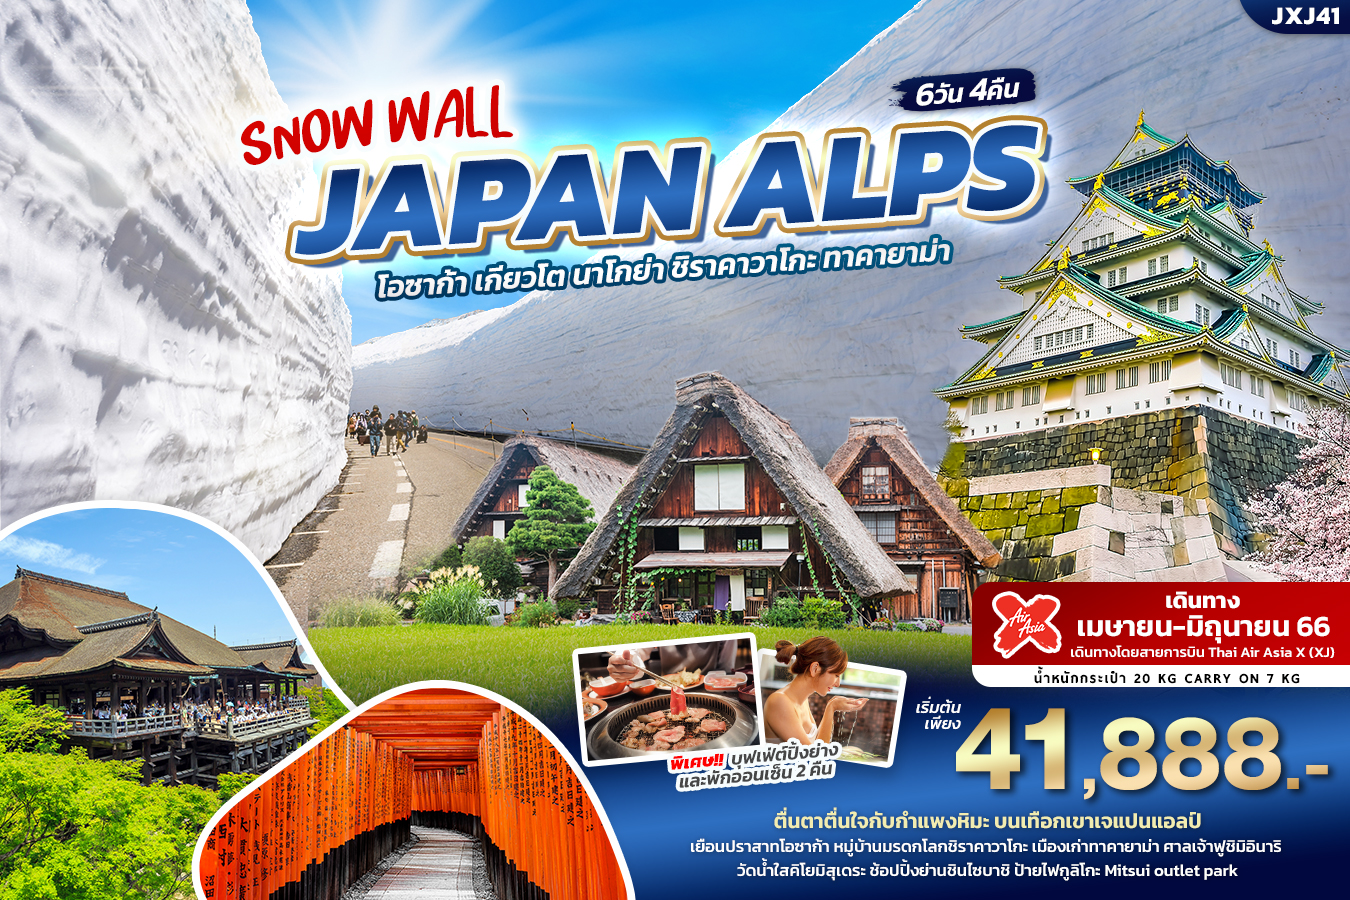 SNOW WALL JAPAN ALPS OSAKA 6วัน4คืน เที่ยวญี่ปุ่น... โอซาก้า เกียวโต นาโกย่า ซิราคาวาโกะ ทาคายาม่า